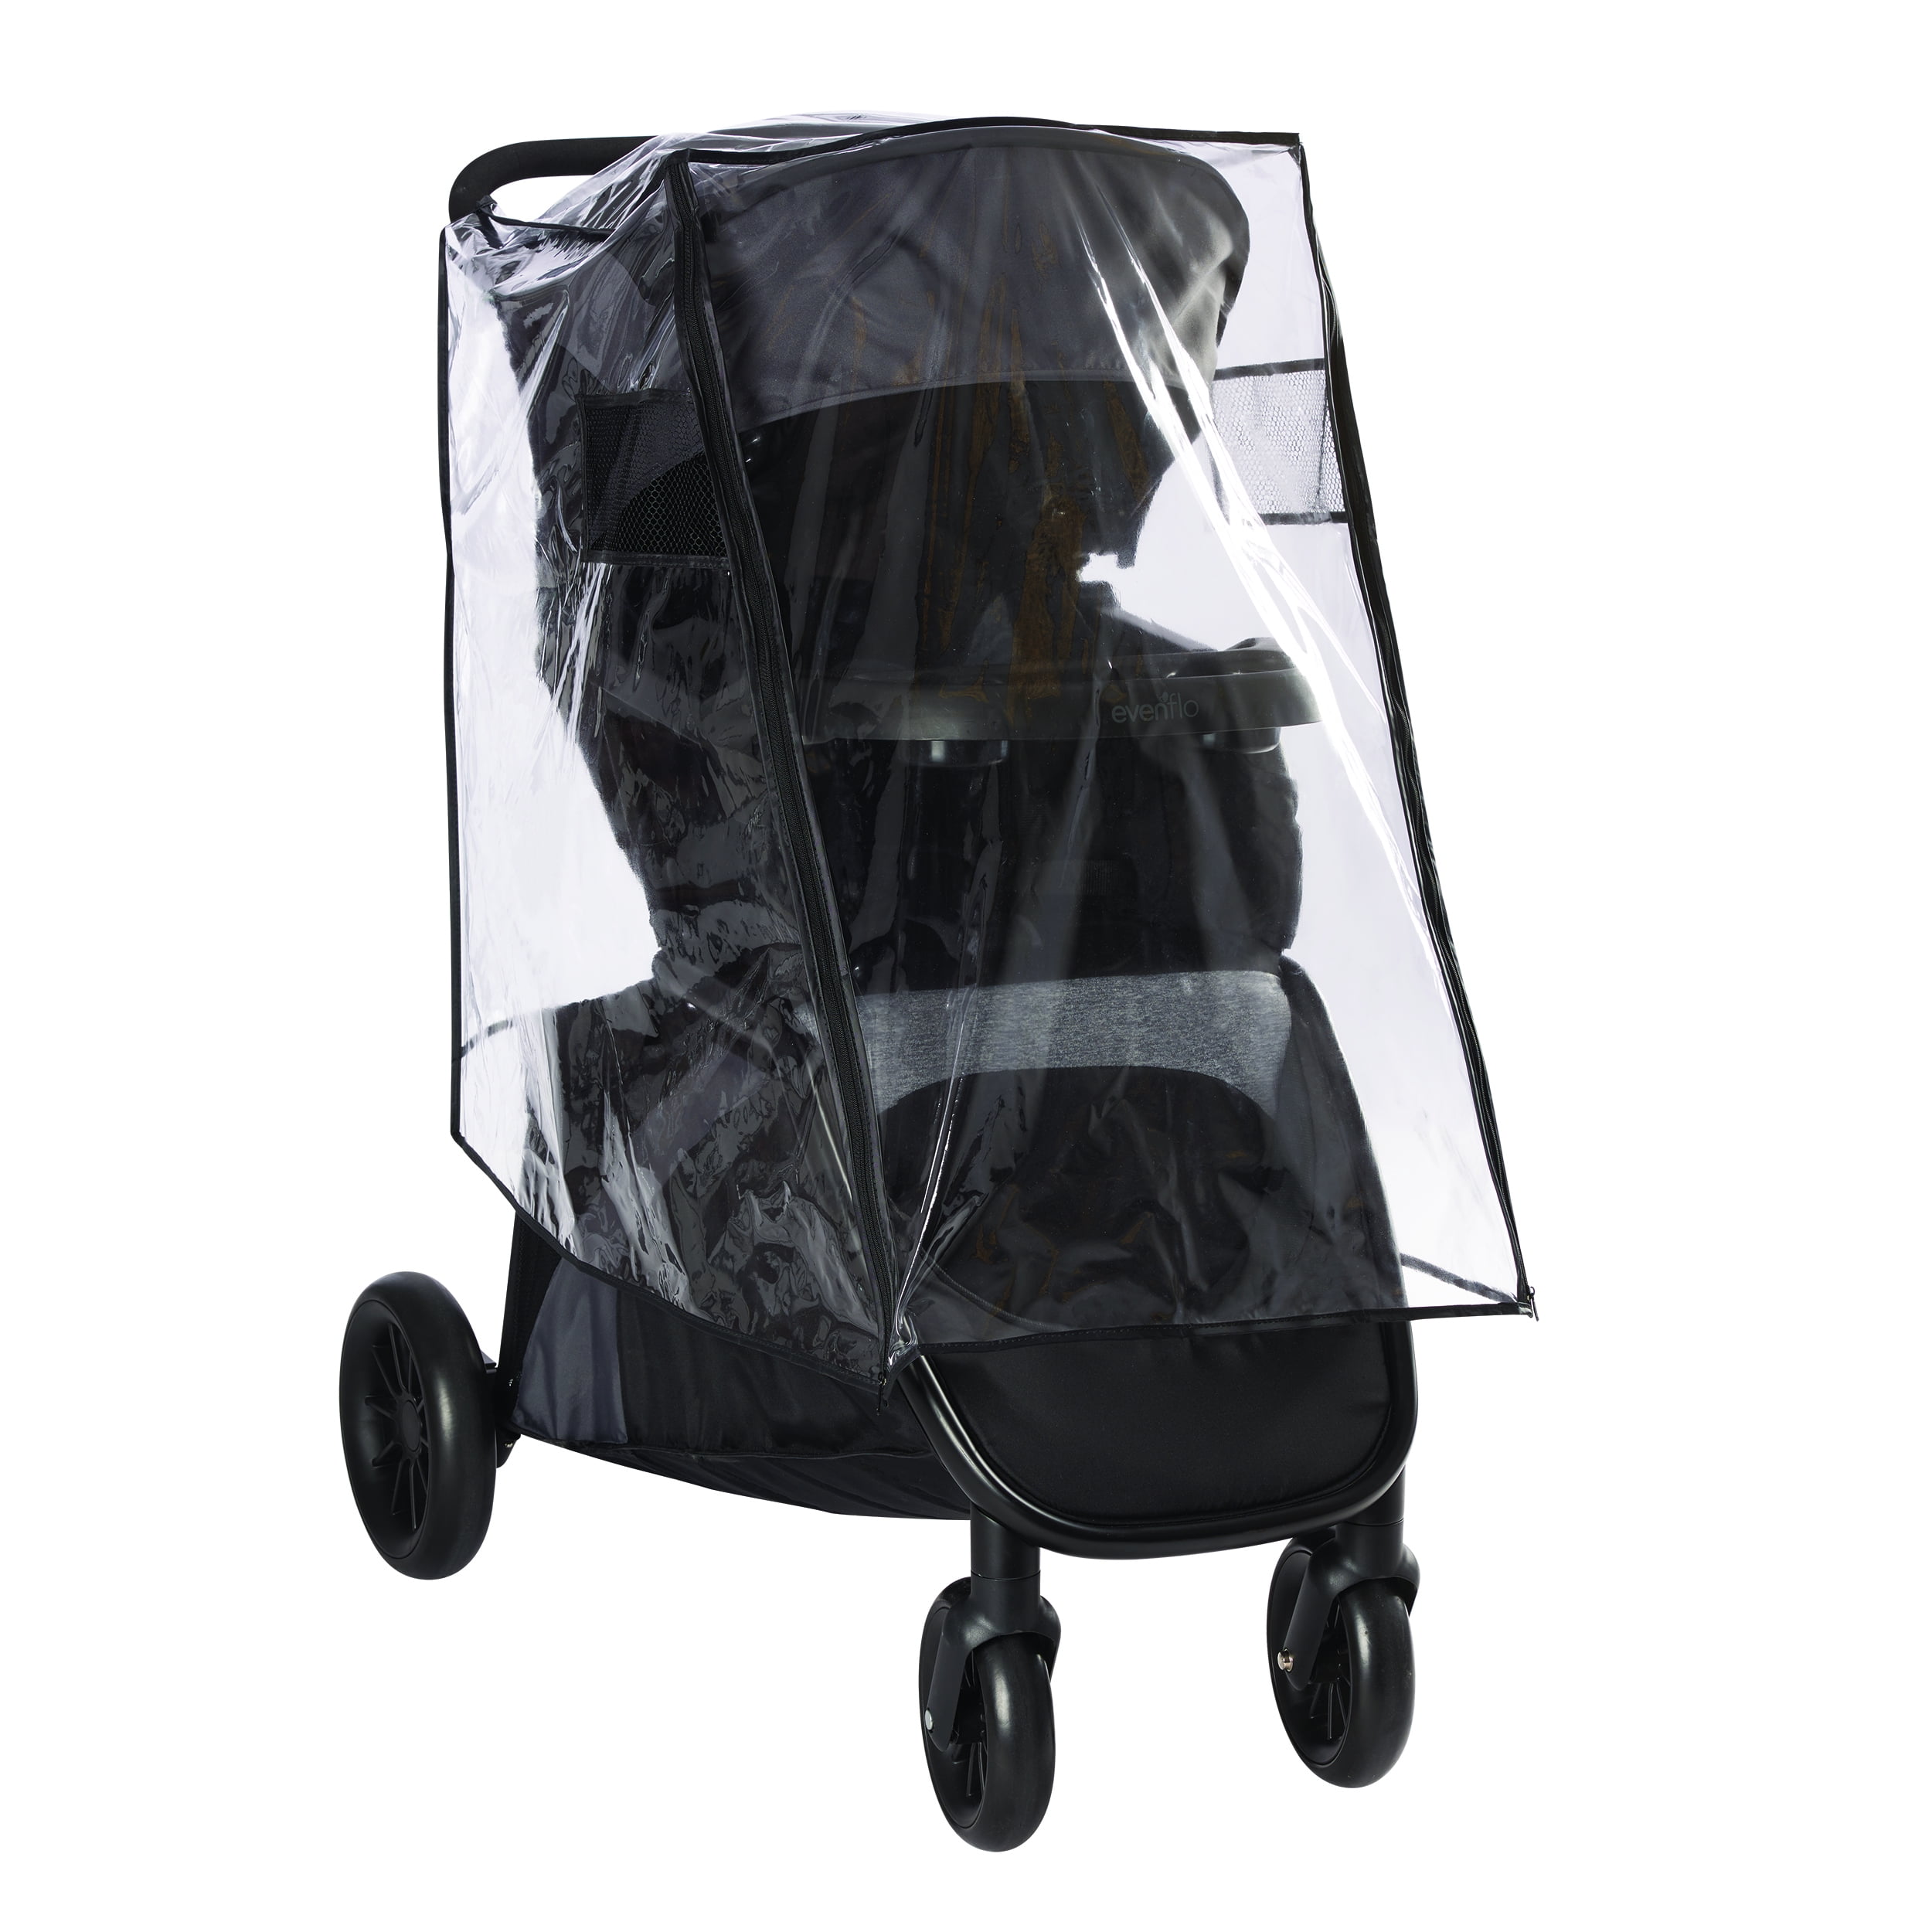 rain shield for stroller